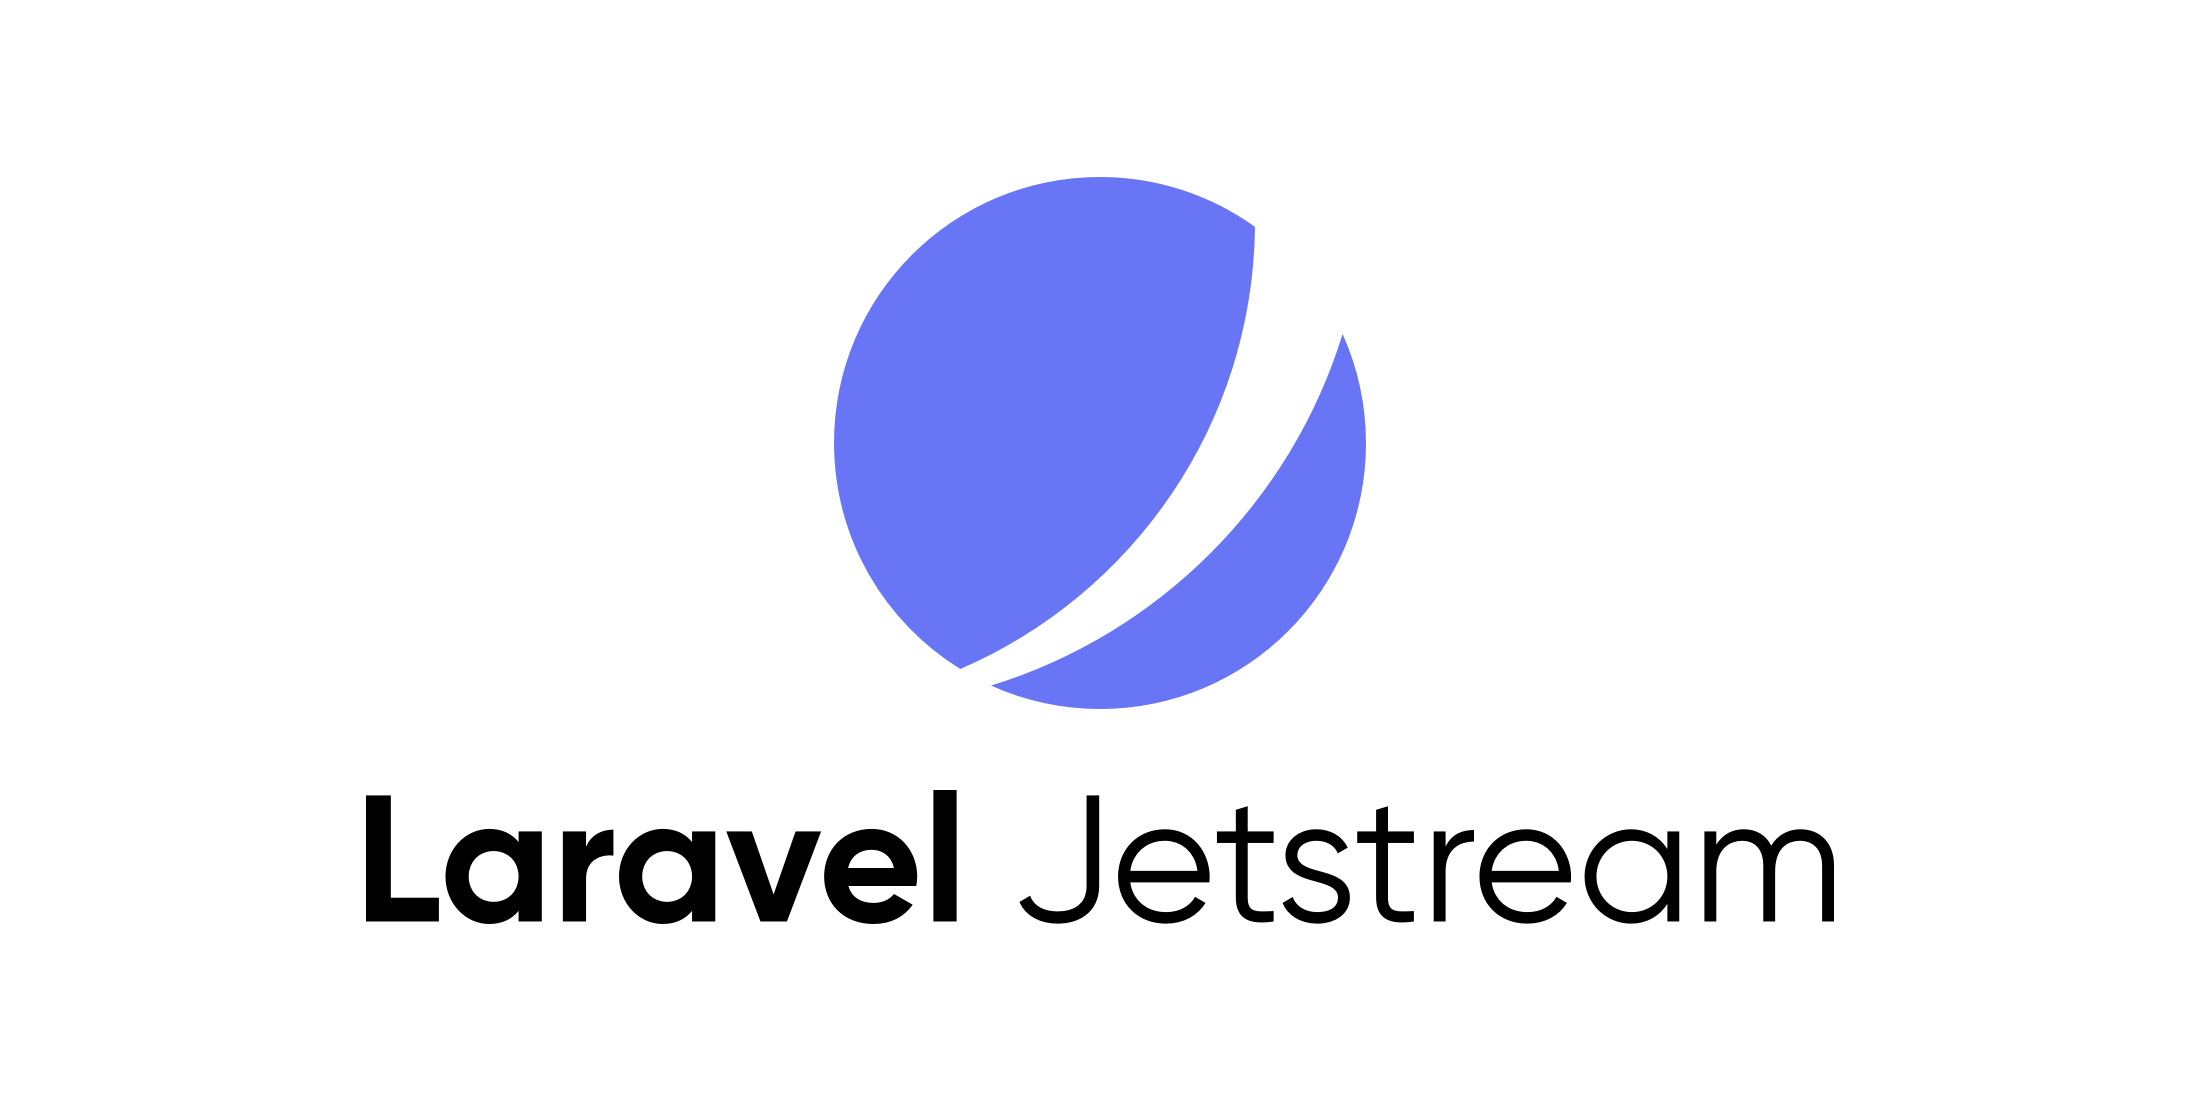 Laravel Jetstream v2 is released image